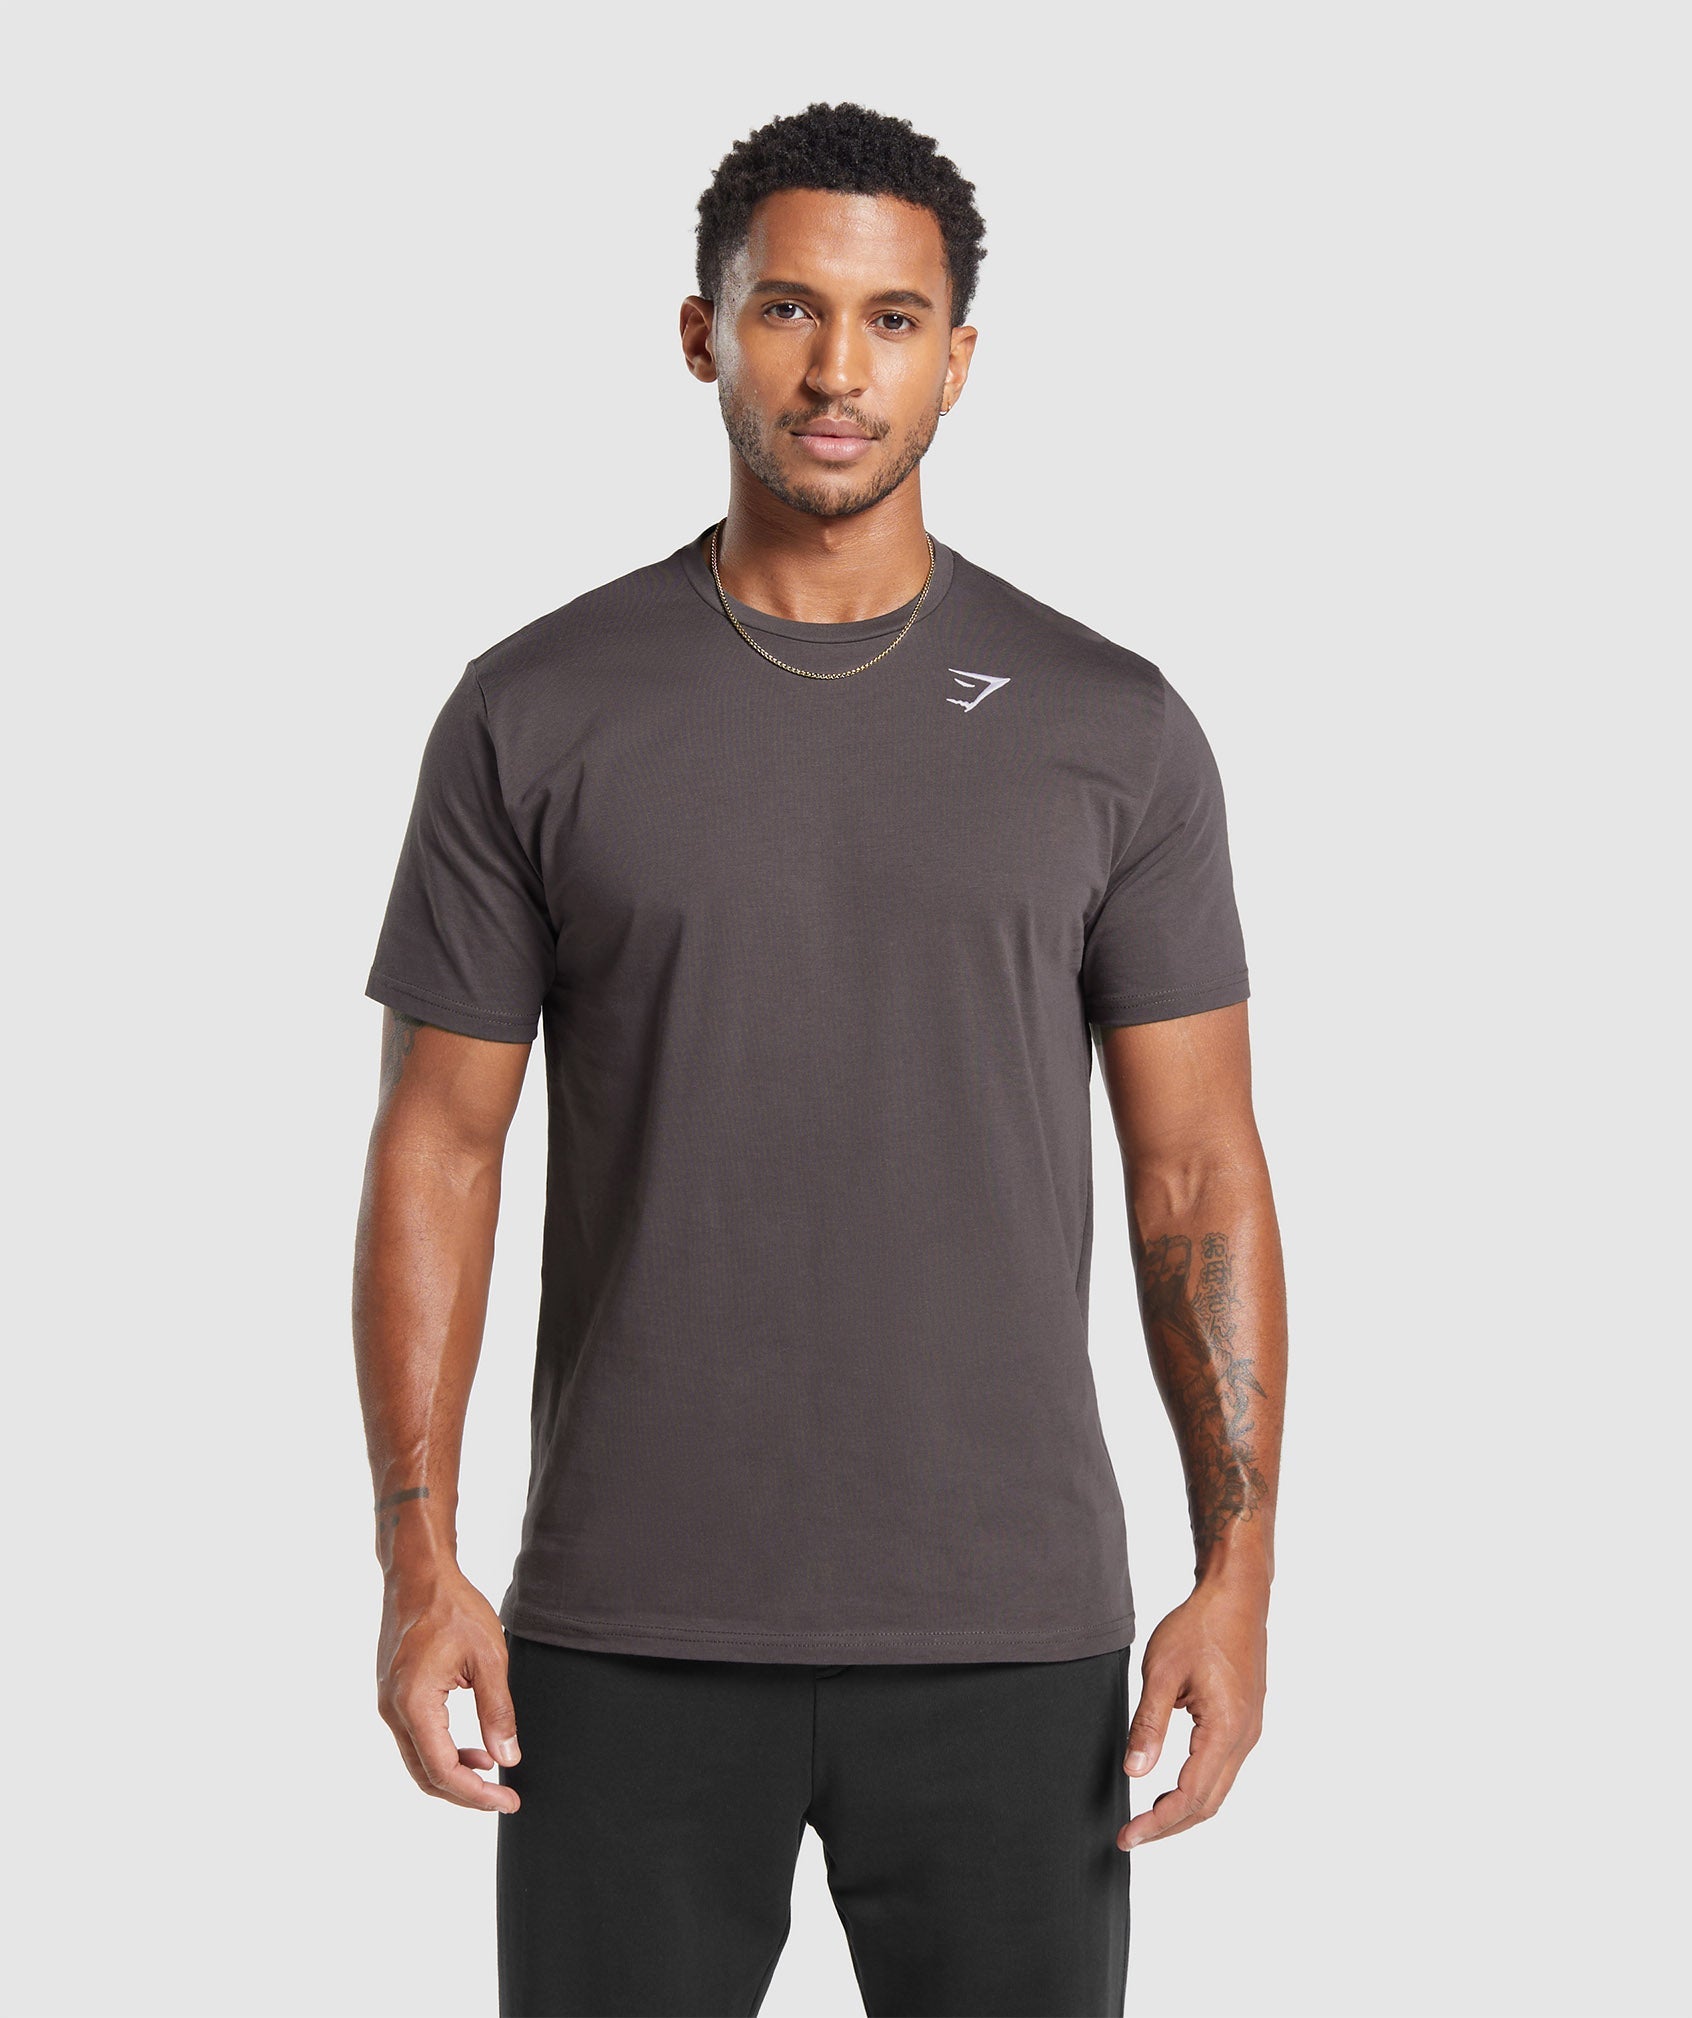 Crest T-Shirt dans Greyed Purpleest en rupture de stock